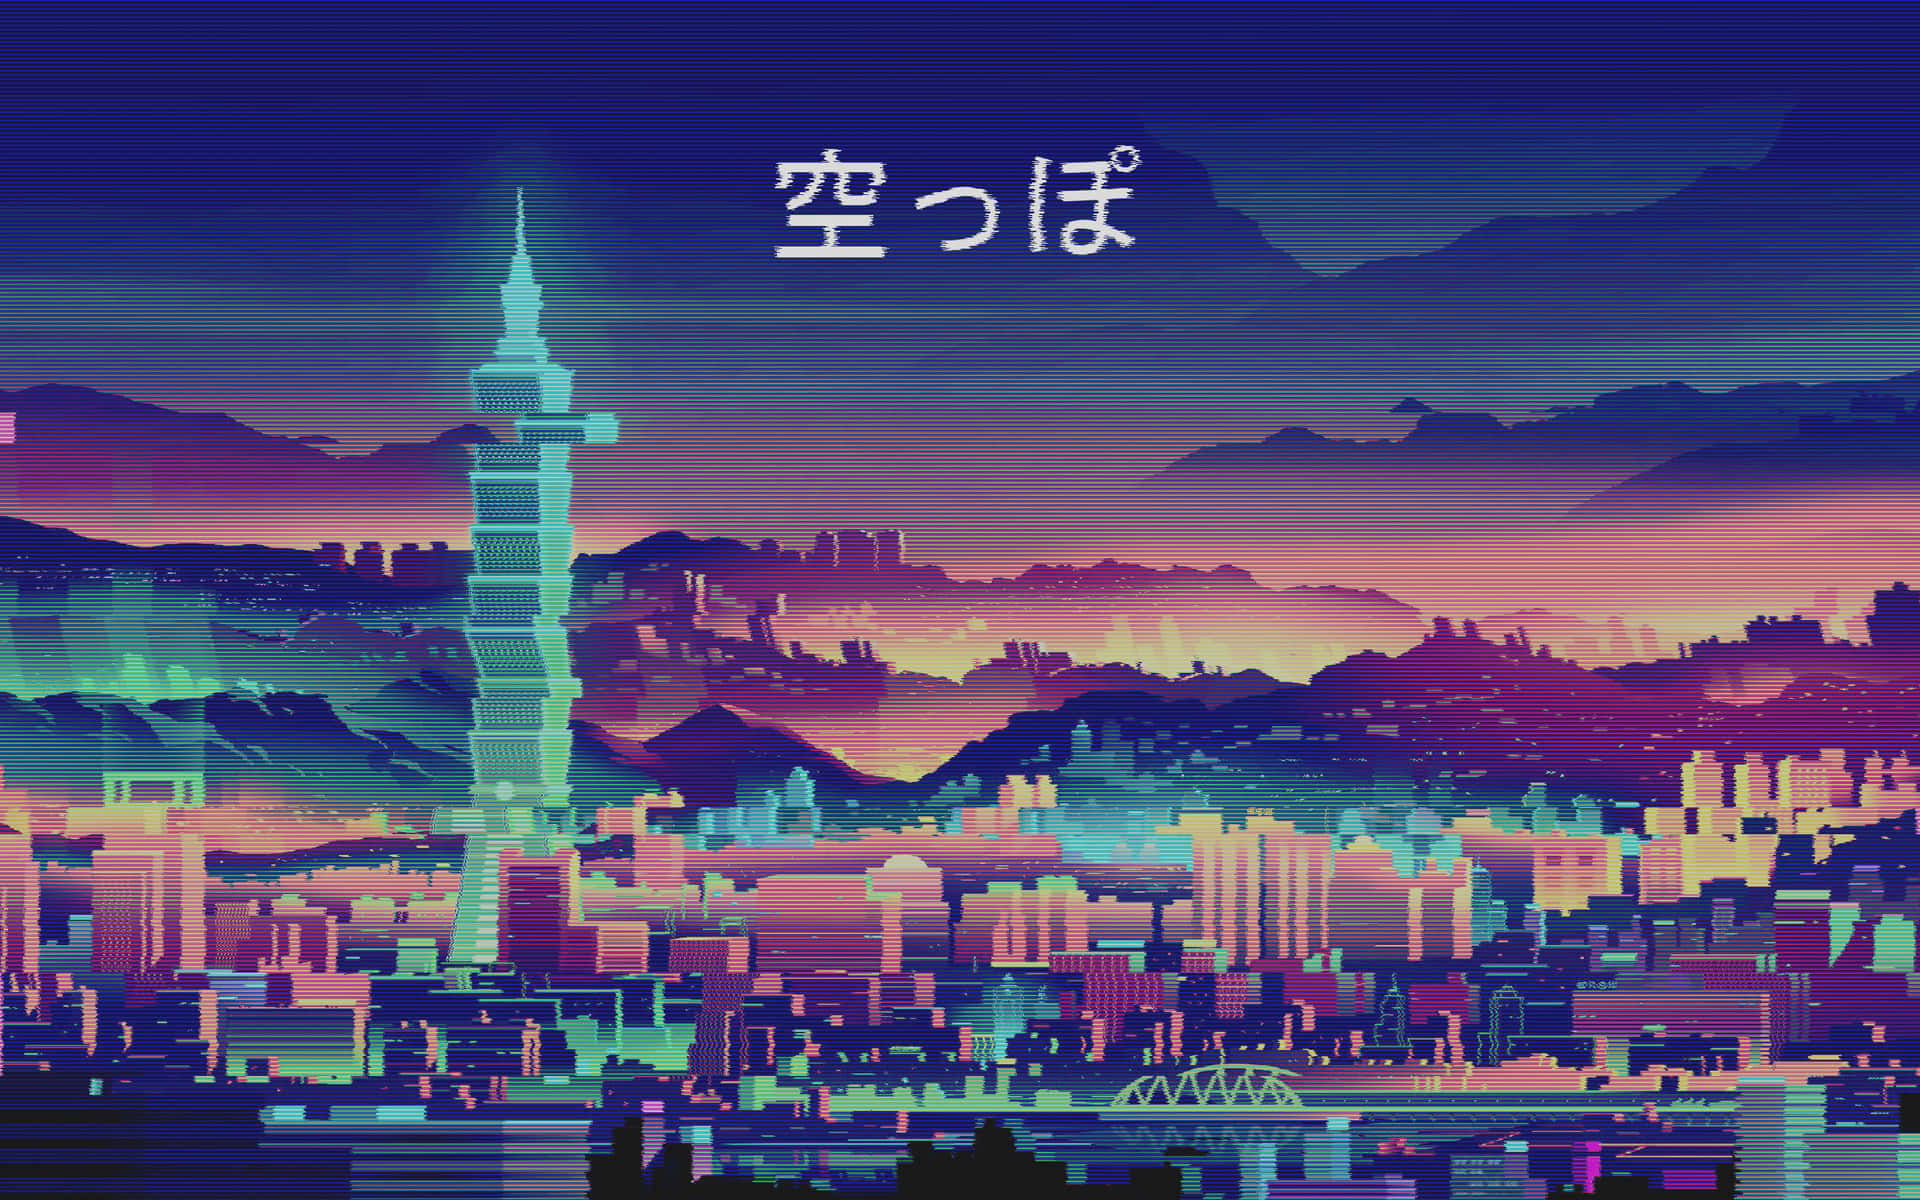 Retro Anime City 80s Aesthetic Digital Art Wallpaper